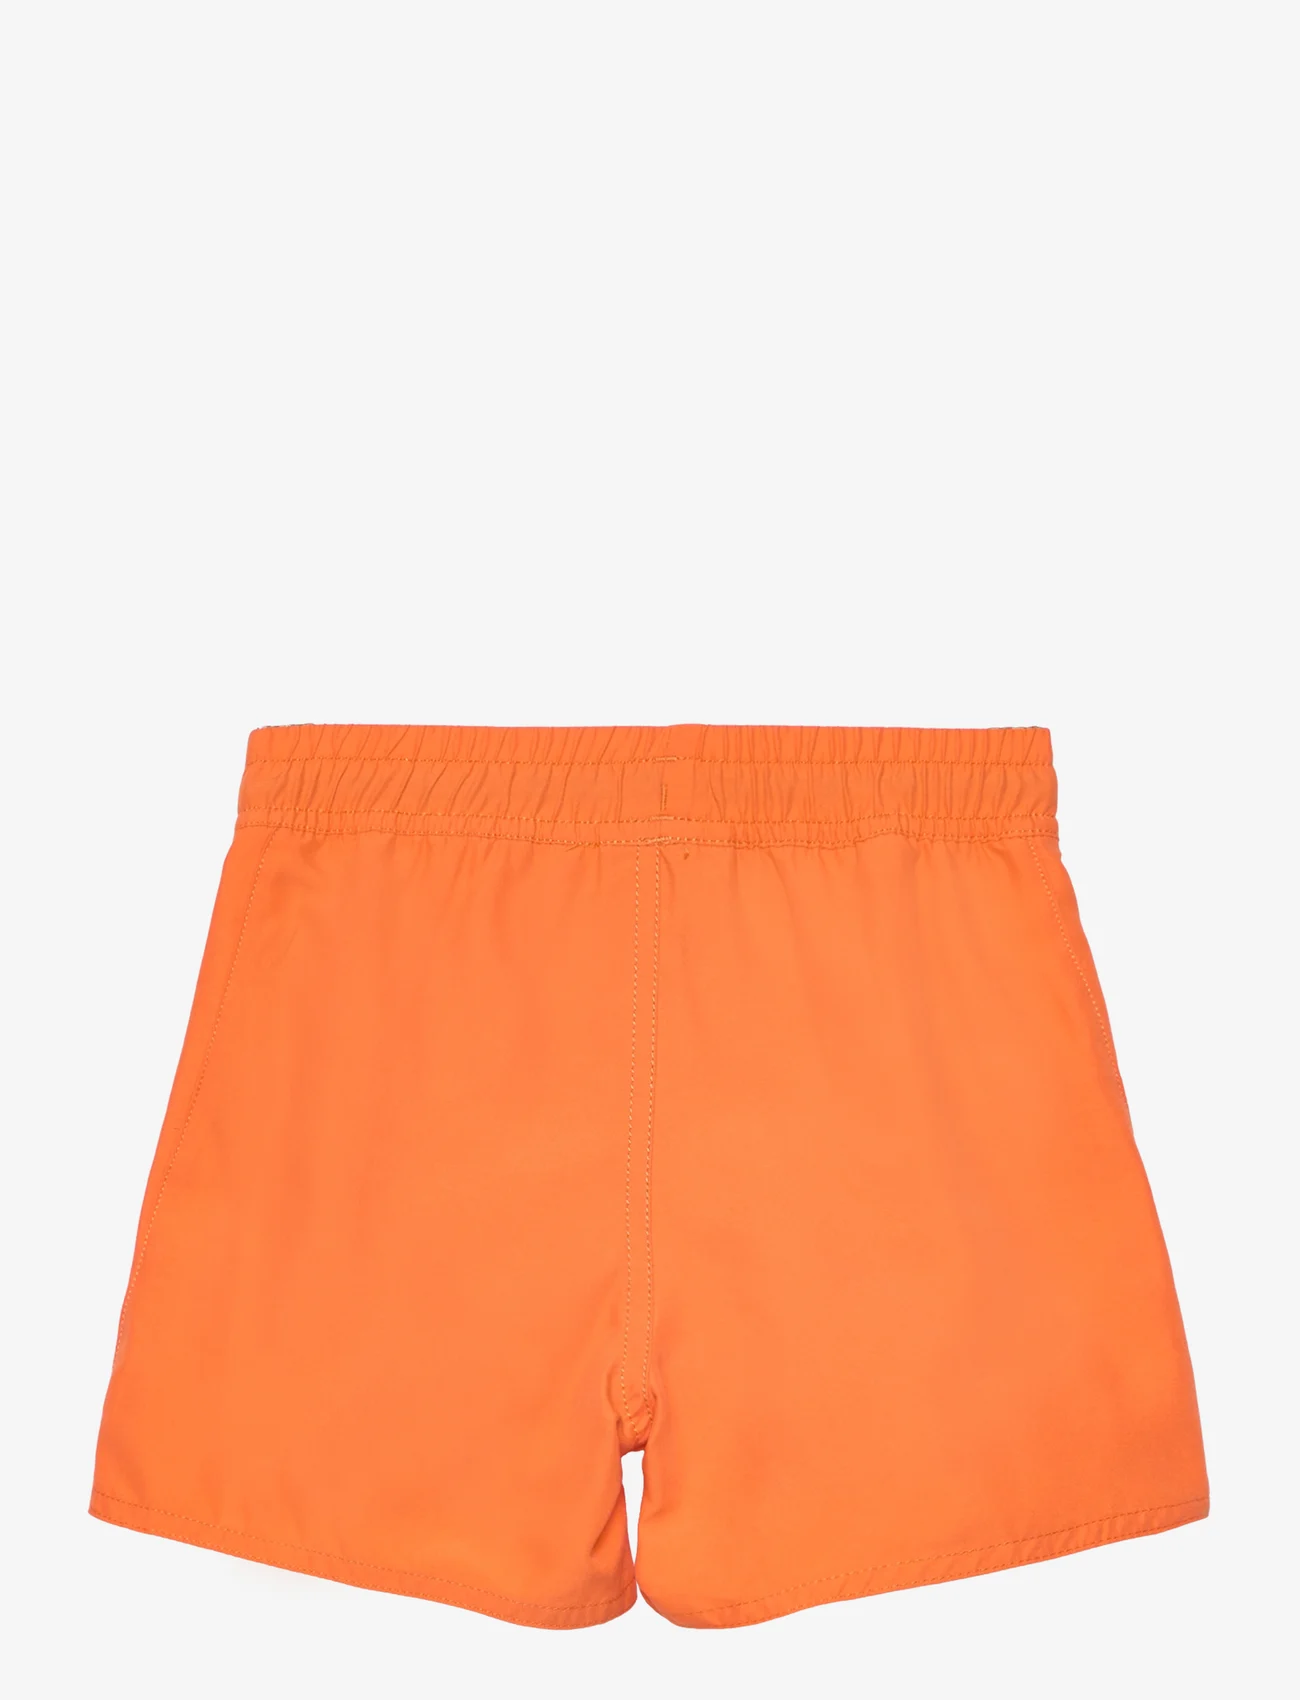 Reima - Swim shorts, Somero - szorty kąpielowe - orange - 1